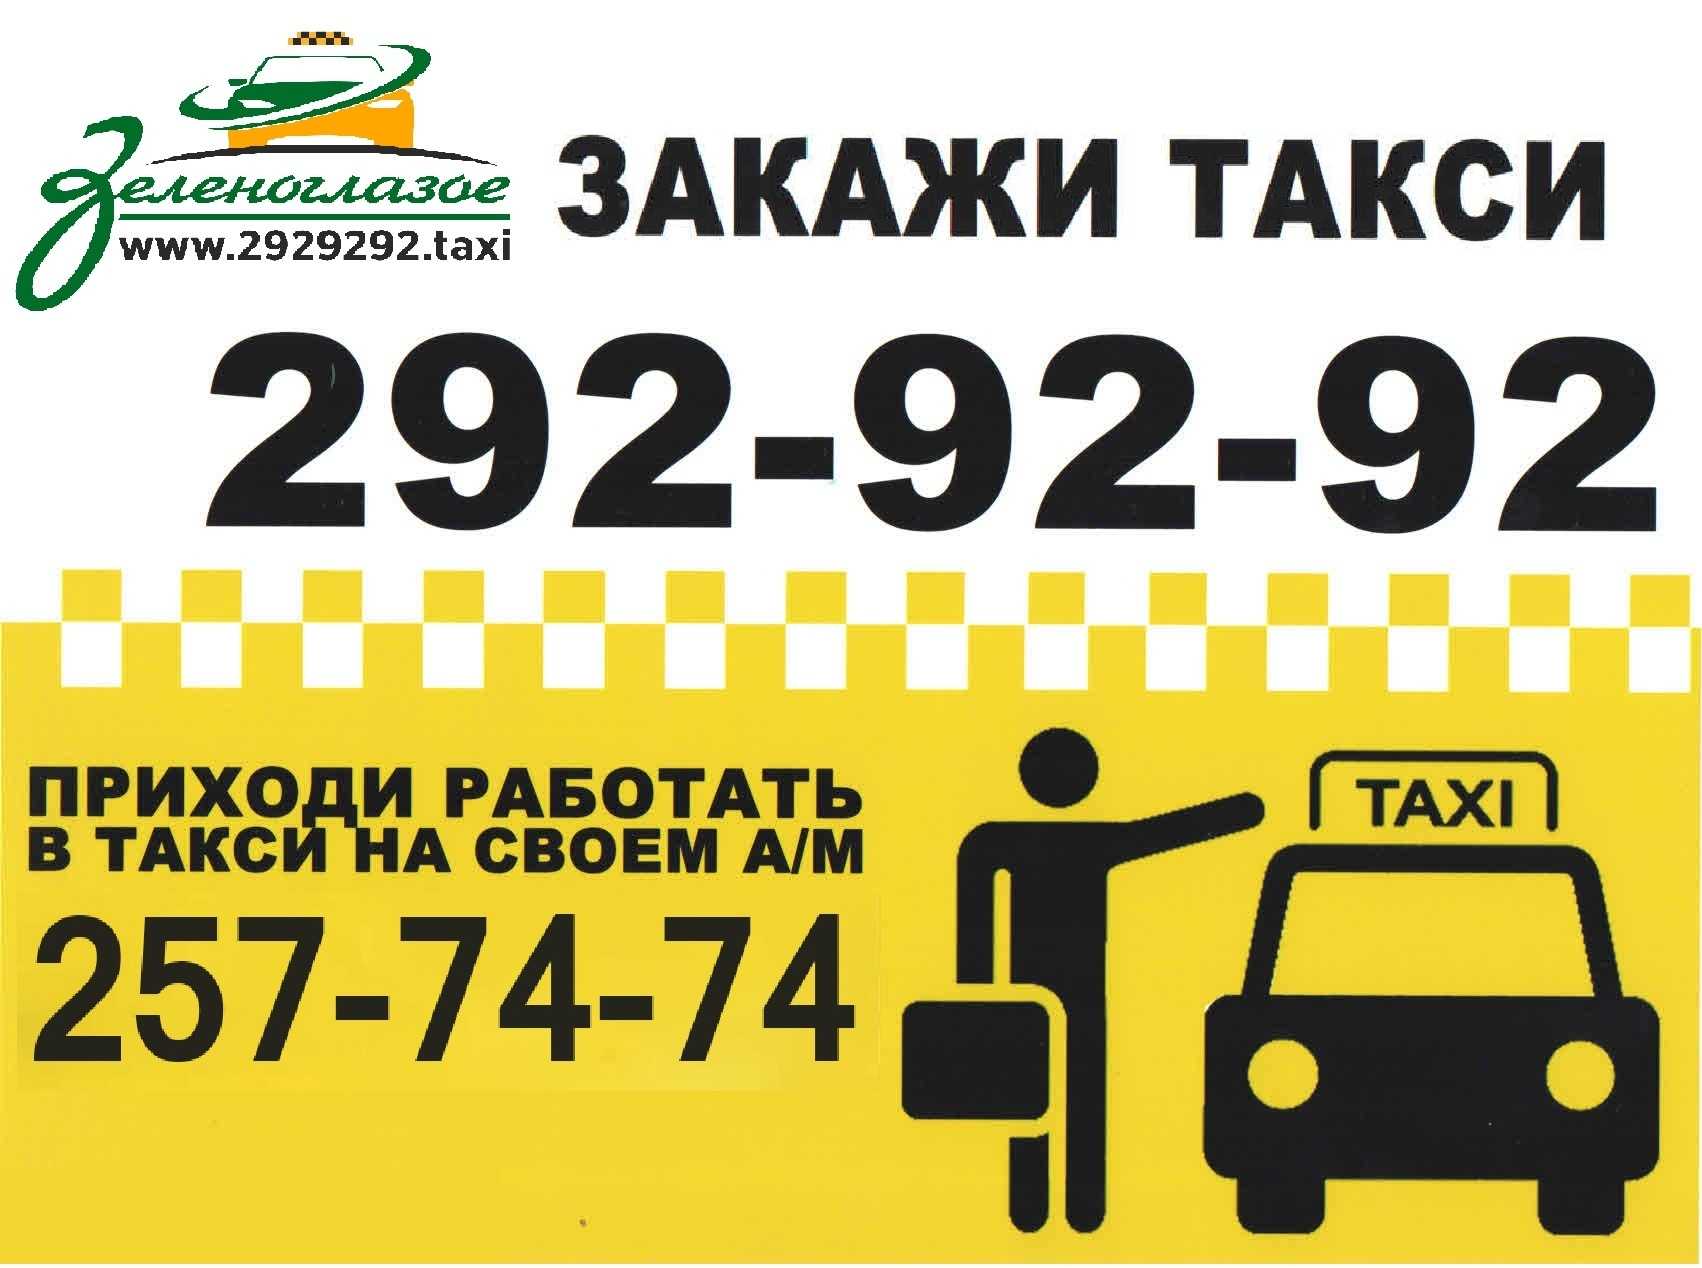 Вызвать такси в челябинске. Закажи такси. Самое дешевое такси номер. Такси Уфа. Номер недорогого такси.